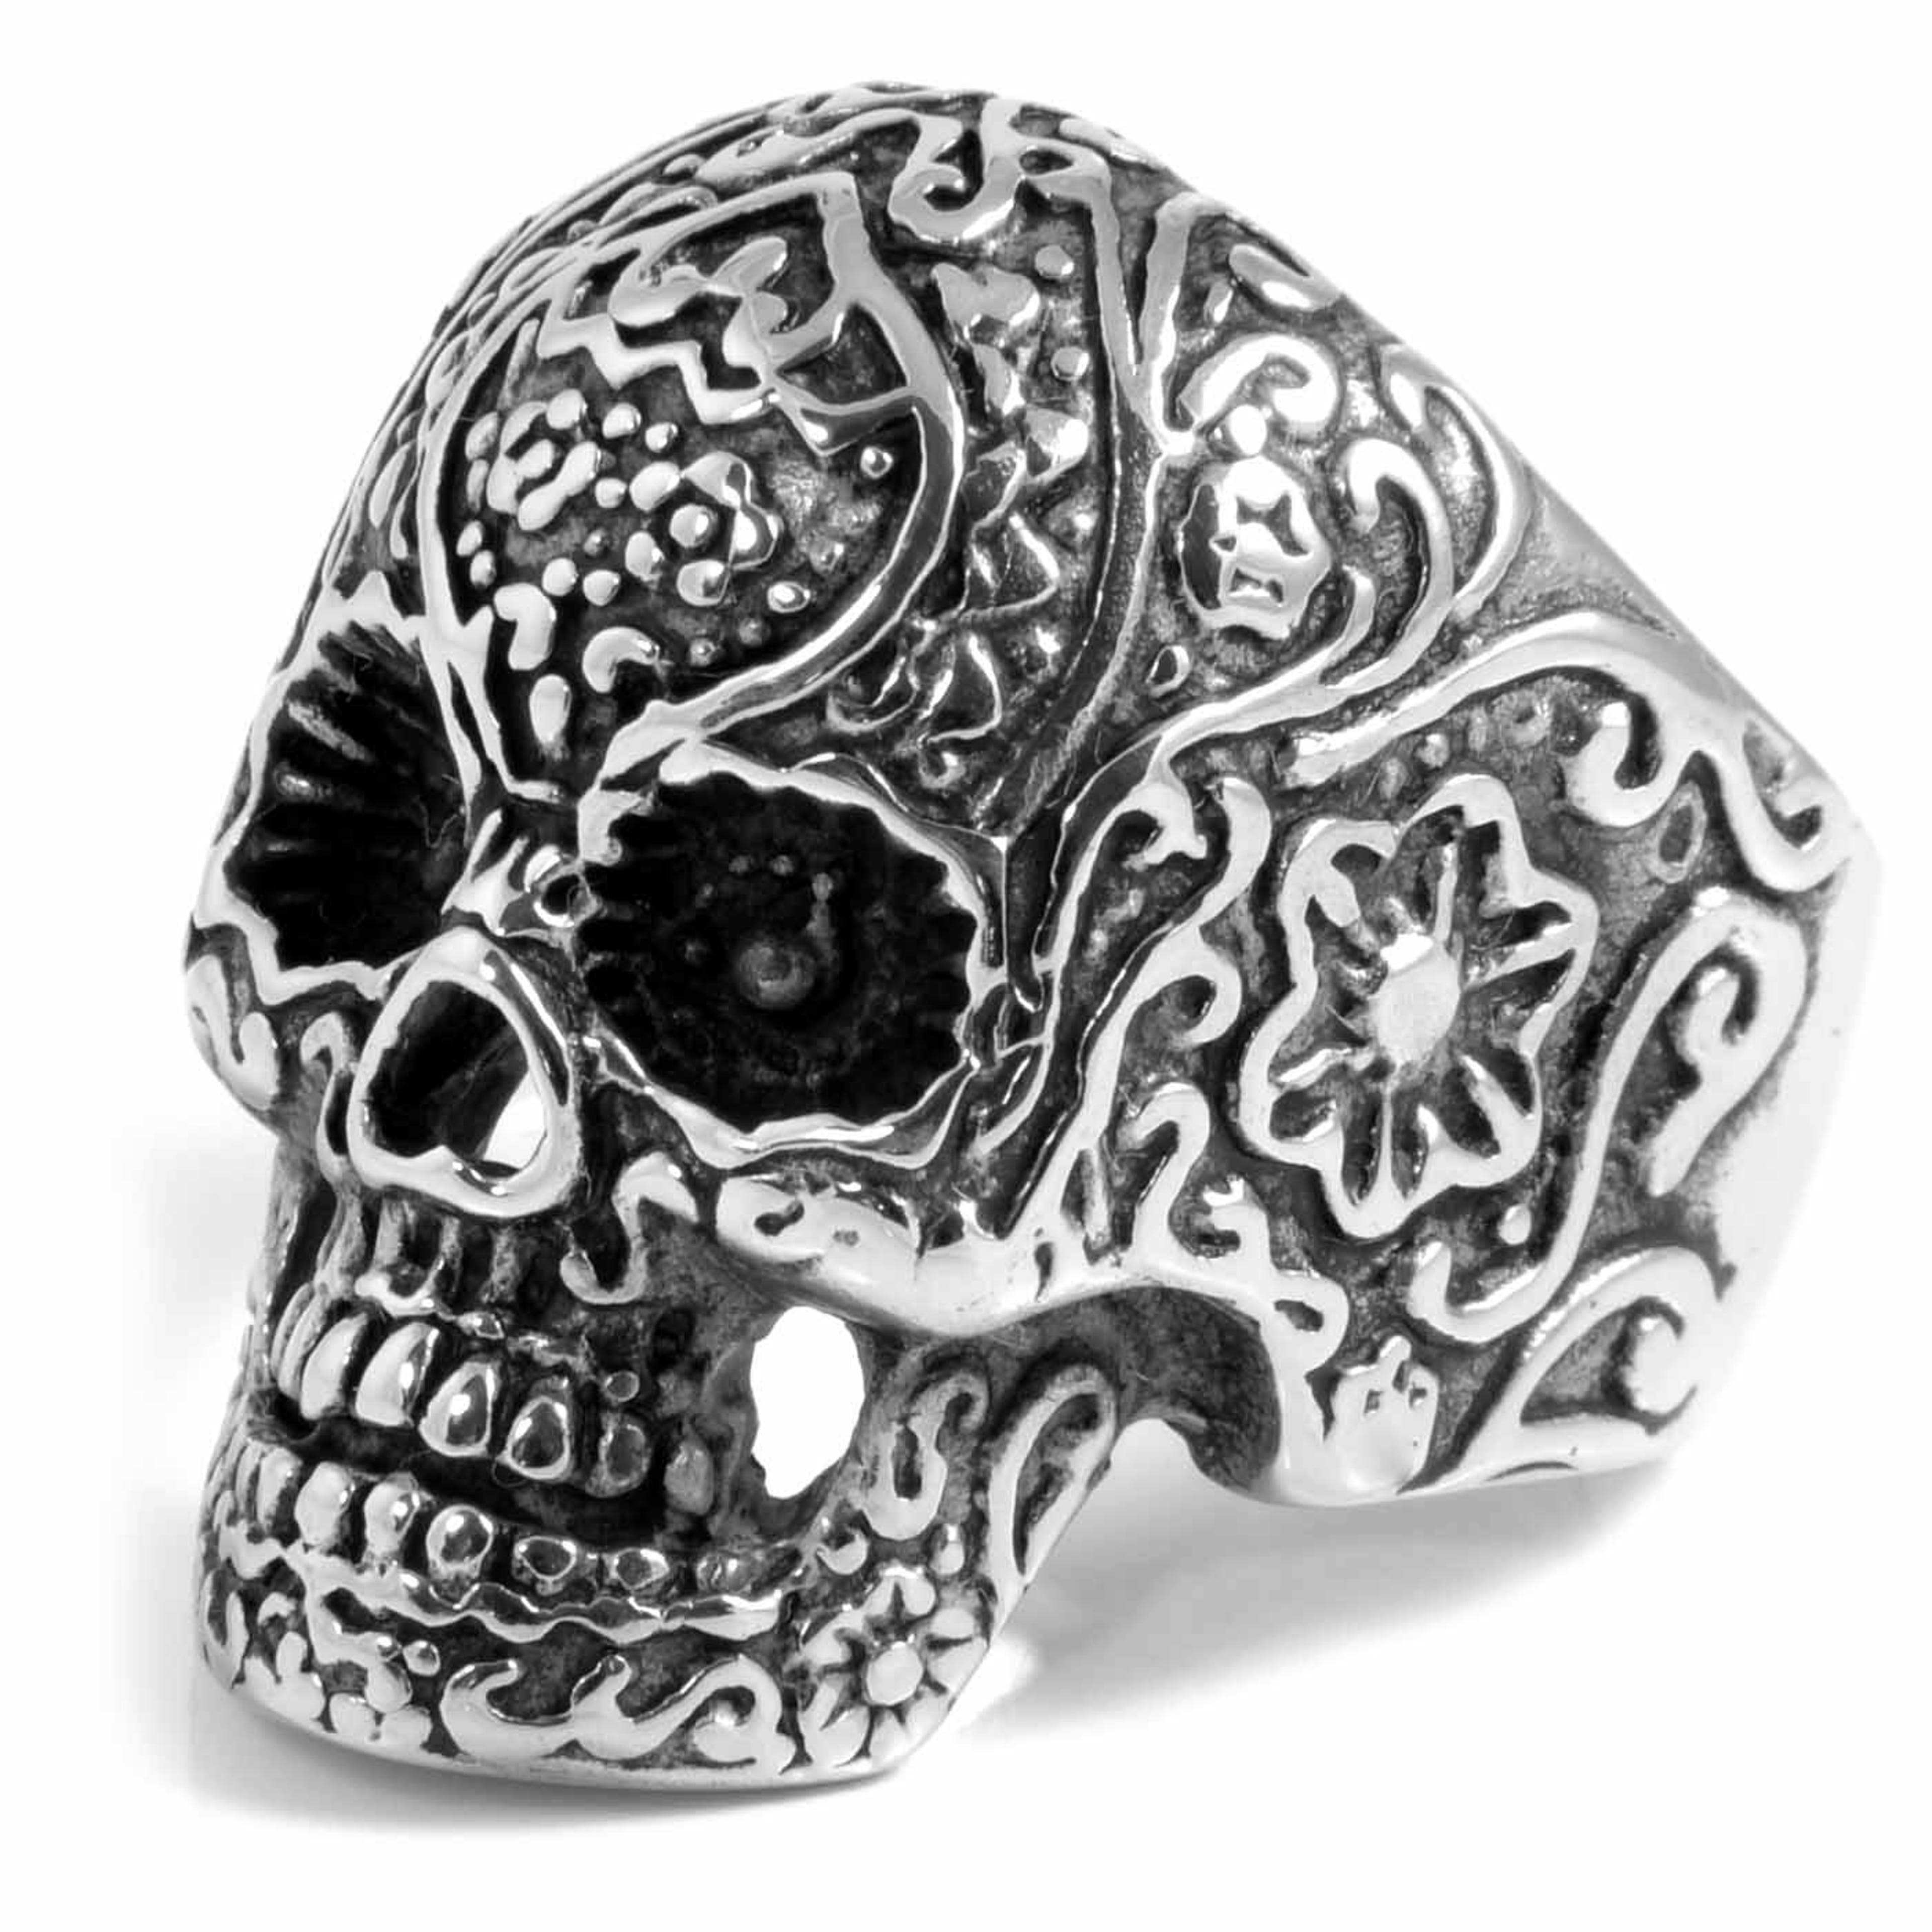 Detailed Skeleton Skull Steel Ring